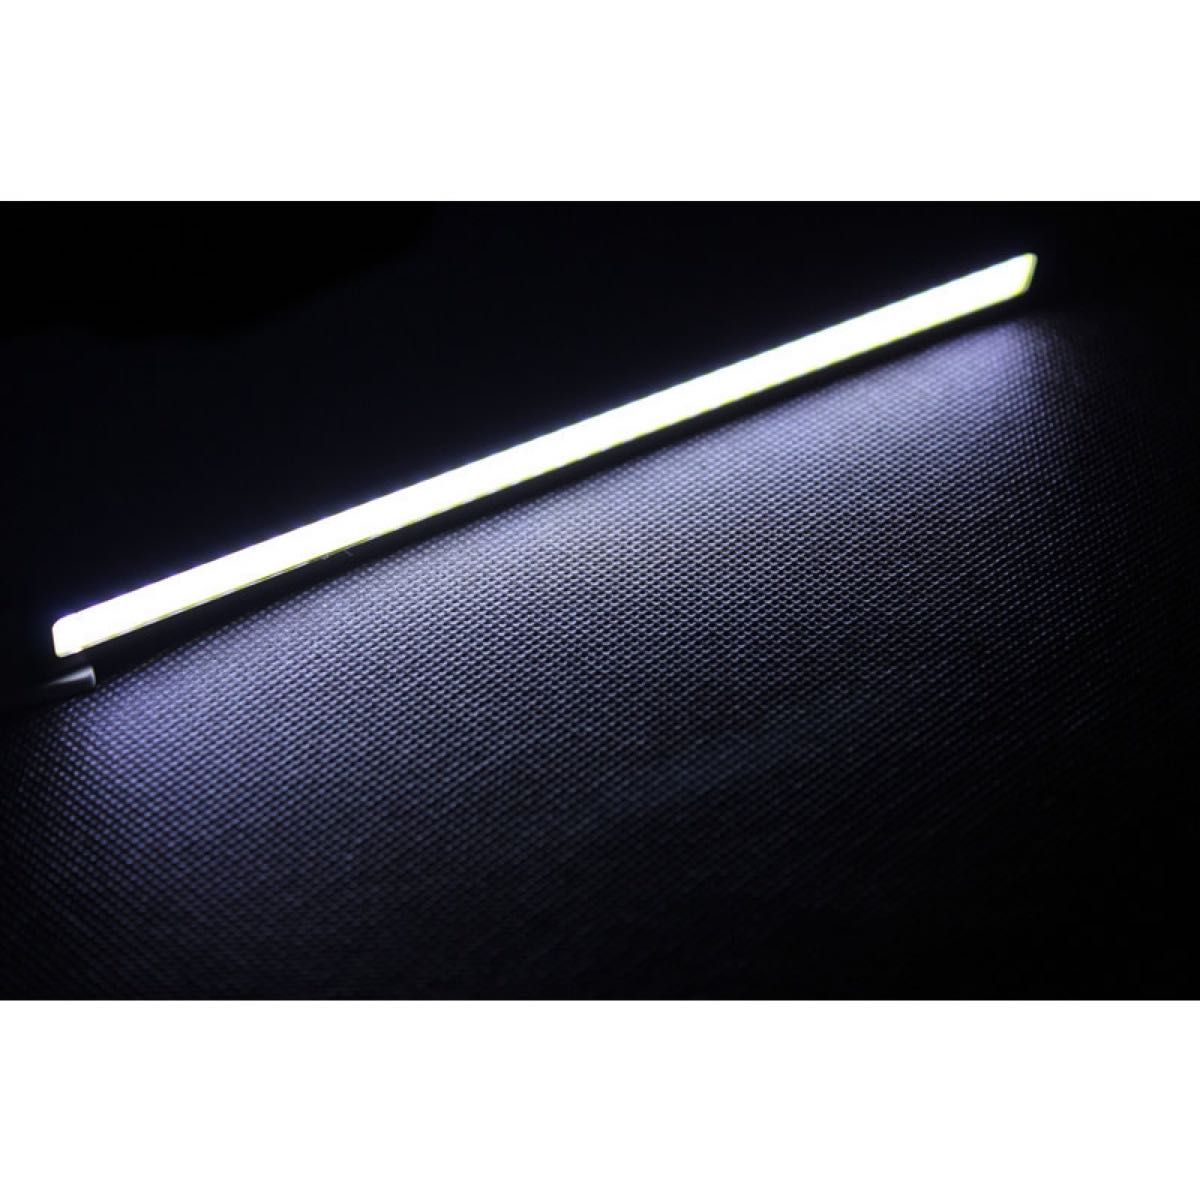 発光力の強いCOB LEDデイライト ホワイト 2本セット 防水 バーライト ブラックフレーム 白